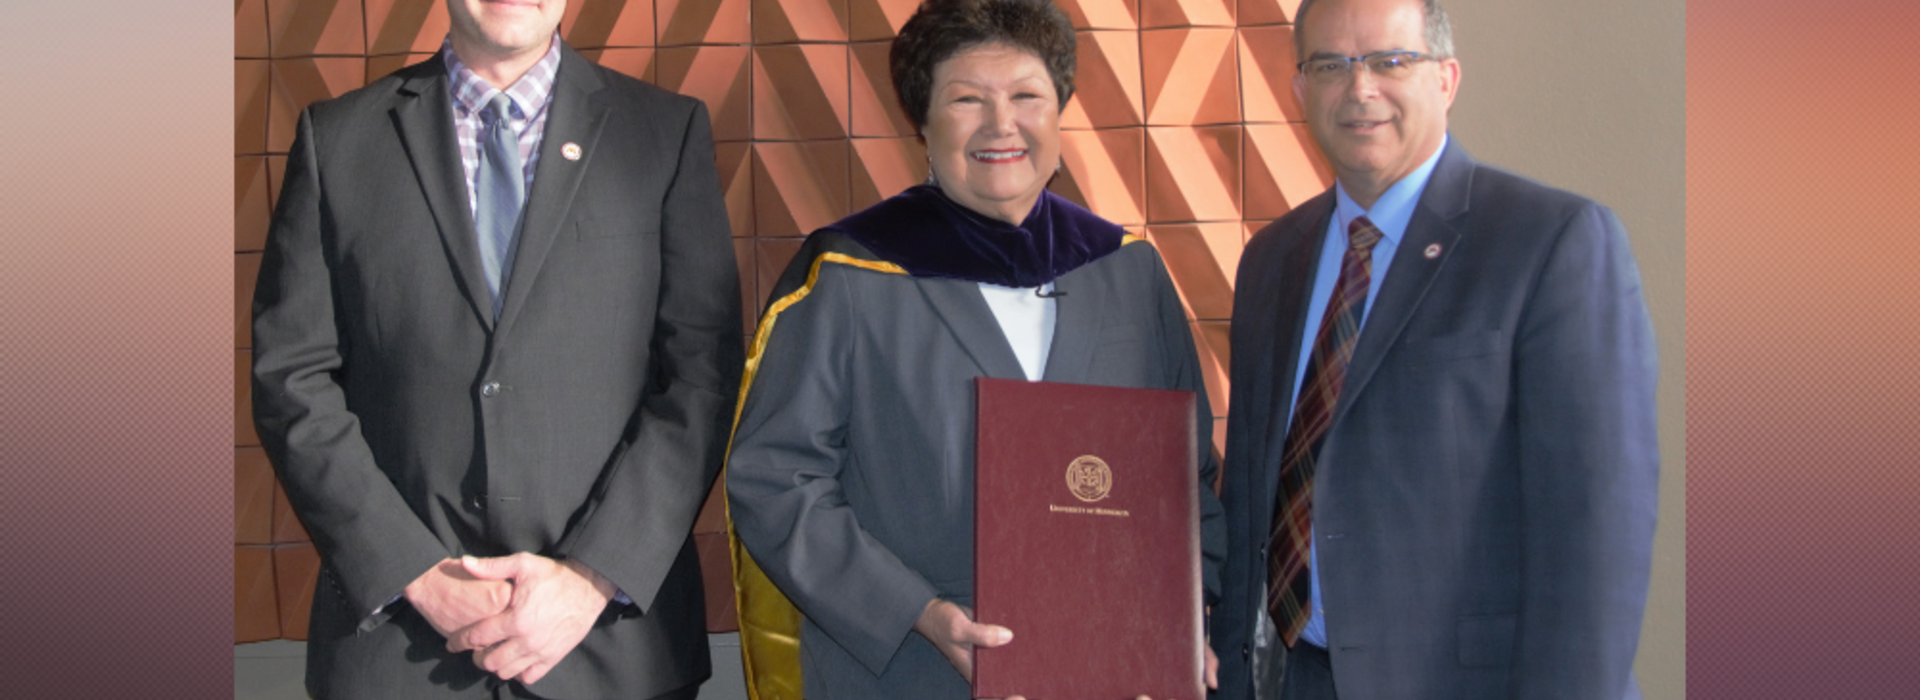 Dr. Kathleen Annette Honorary Degree